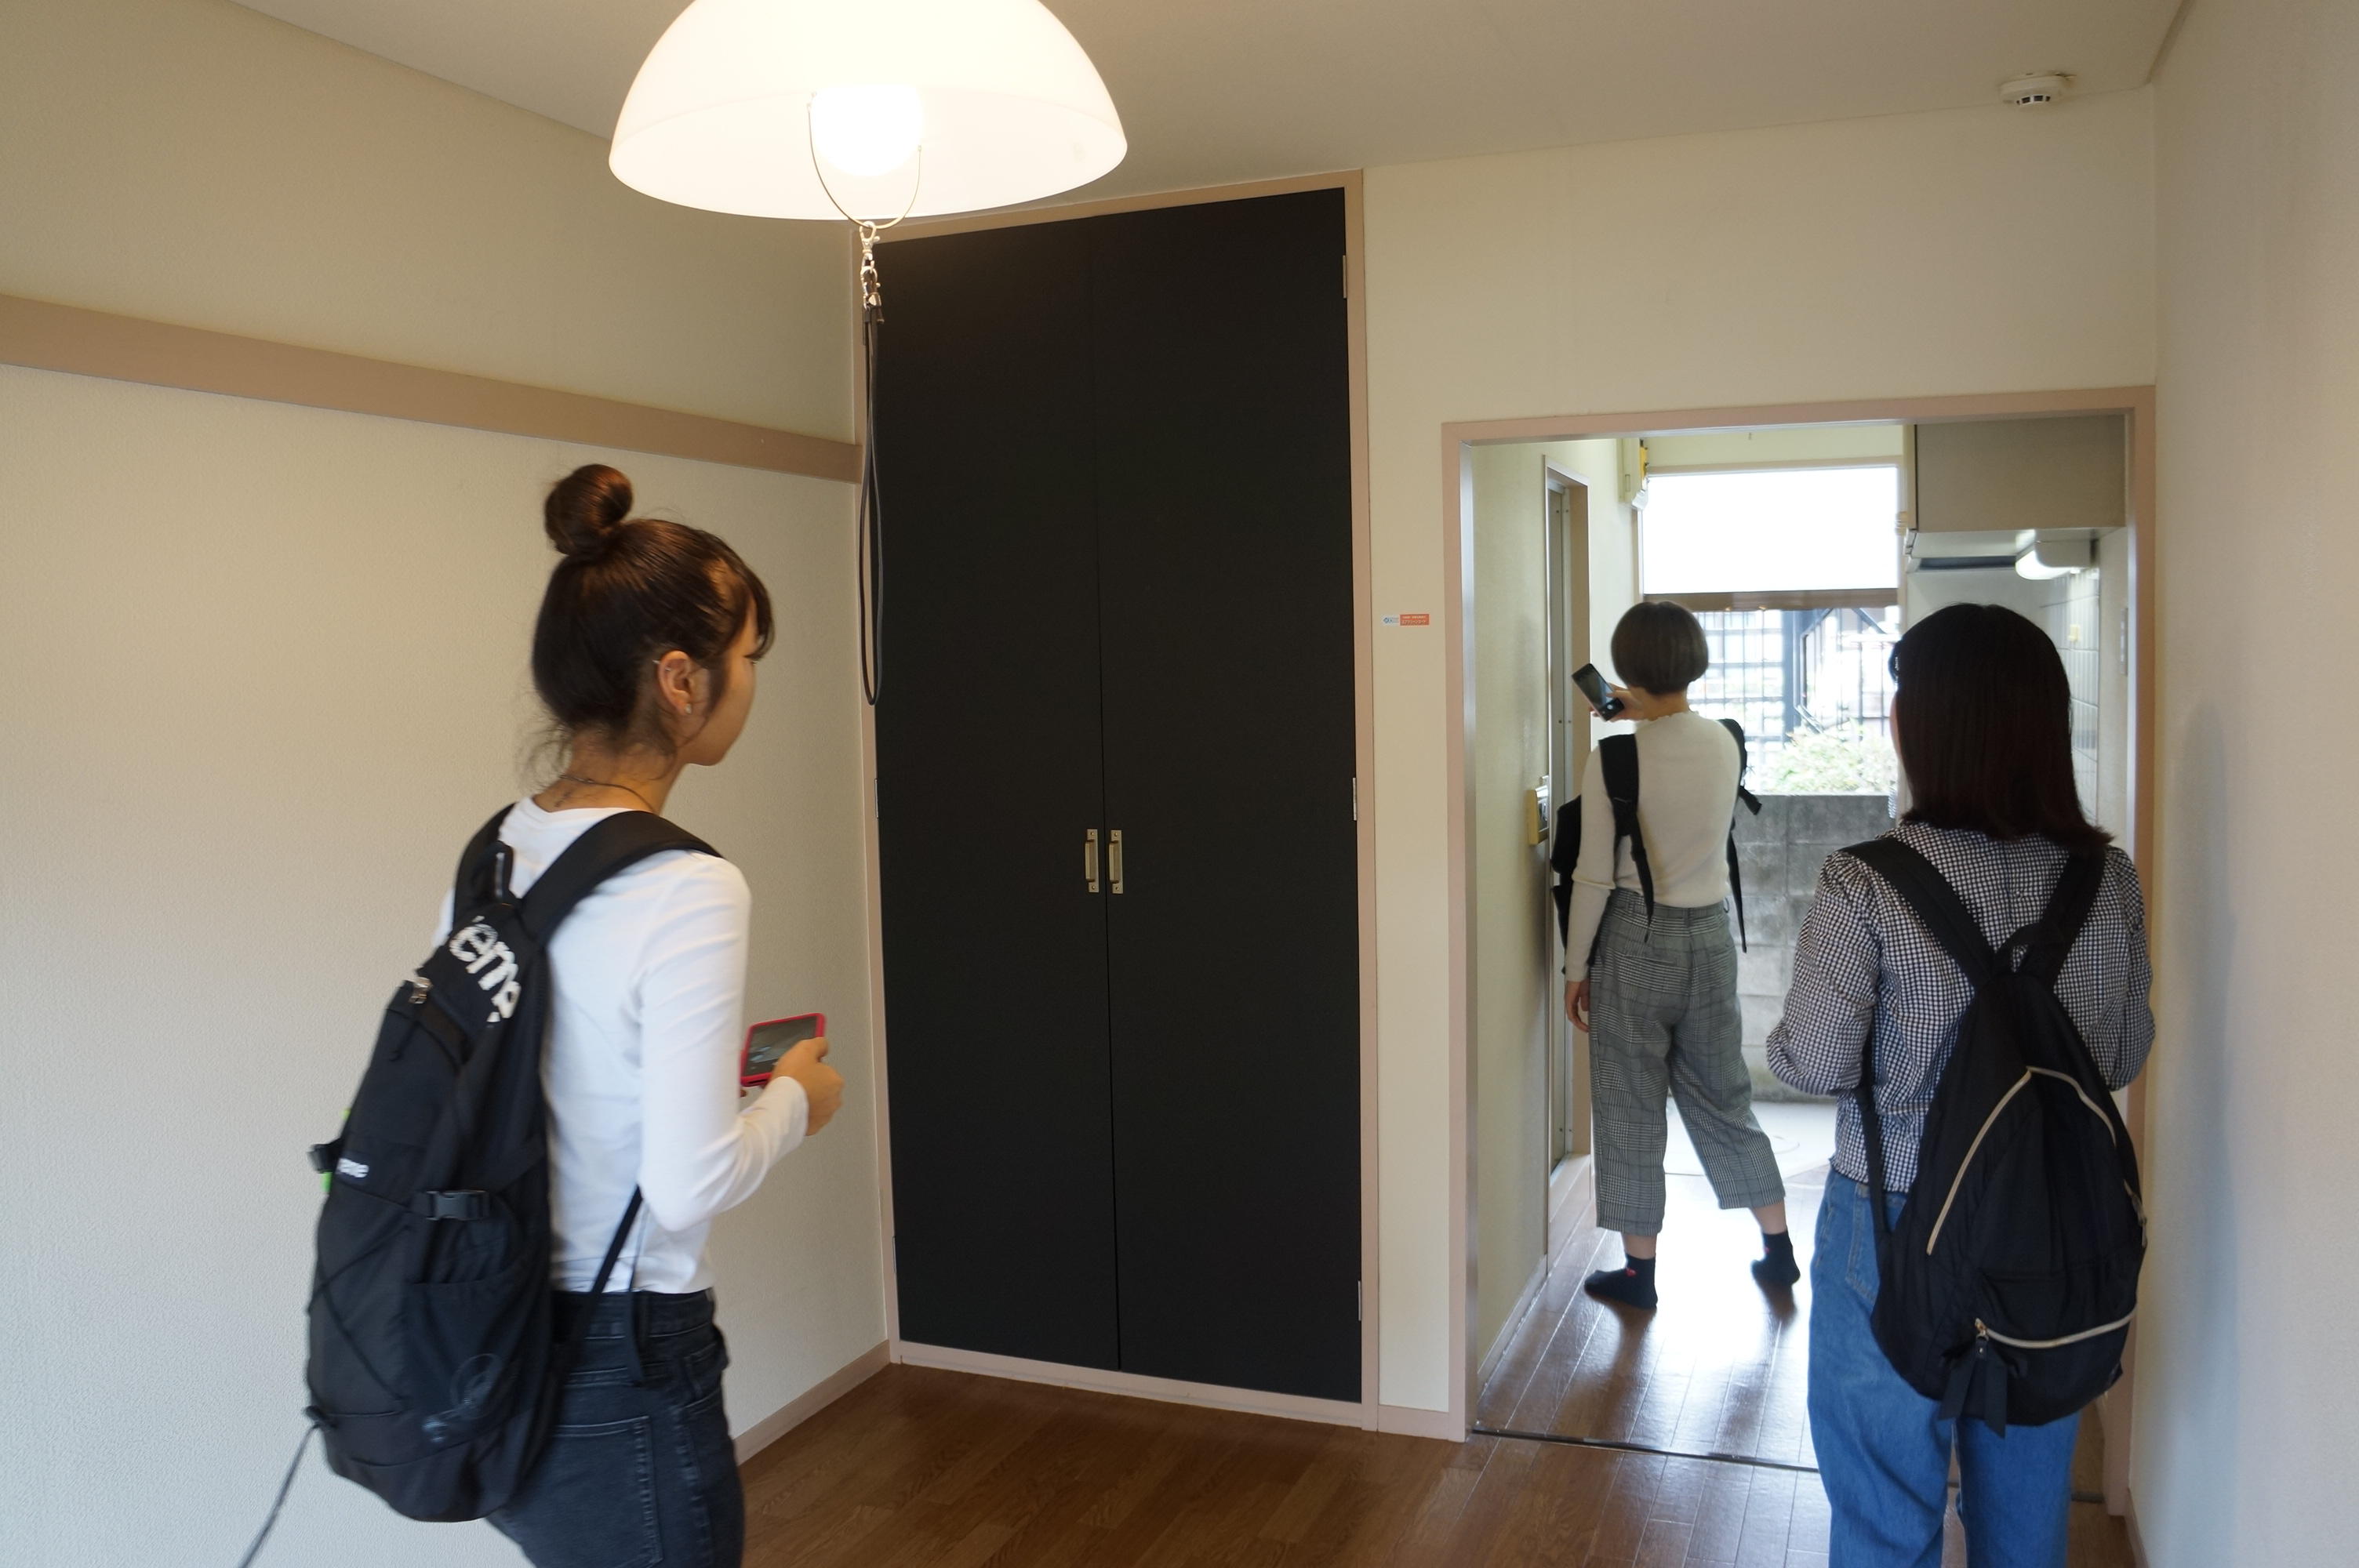 駒沢女子大学の学生が賃貸住宅のリニューアル計画を提案する「コマジョスタイル」がスタート ～12月13日に企業プレゼン講評会、来年1月に表彰式を実施～